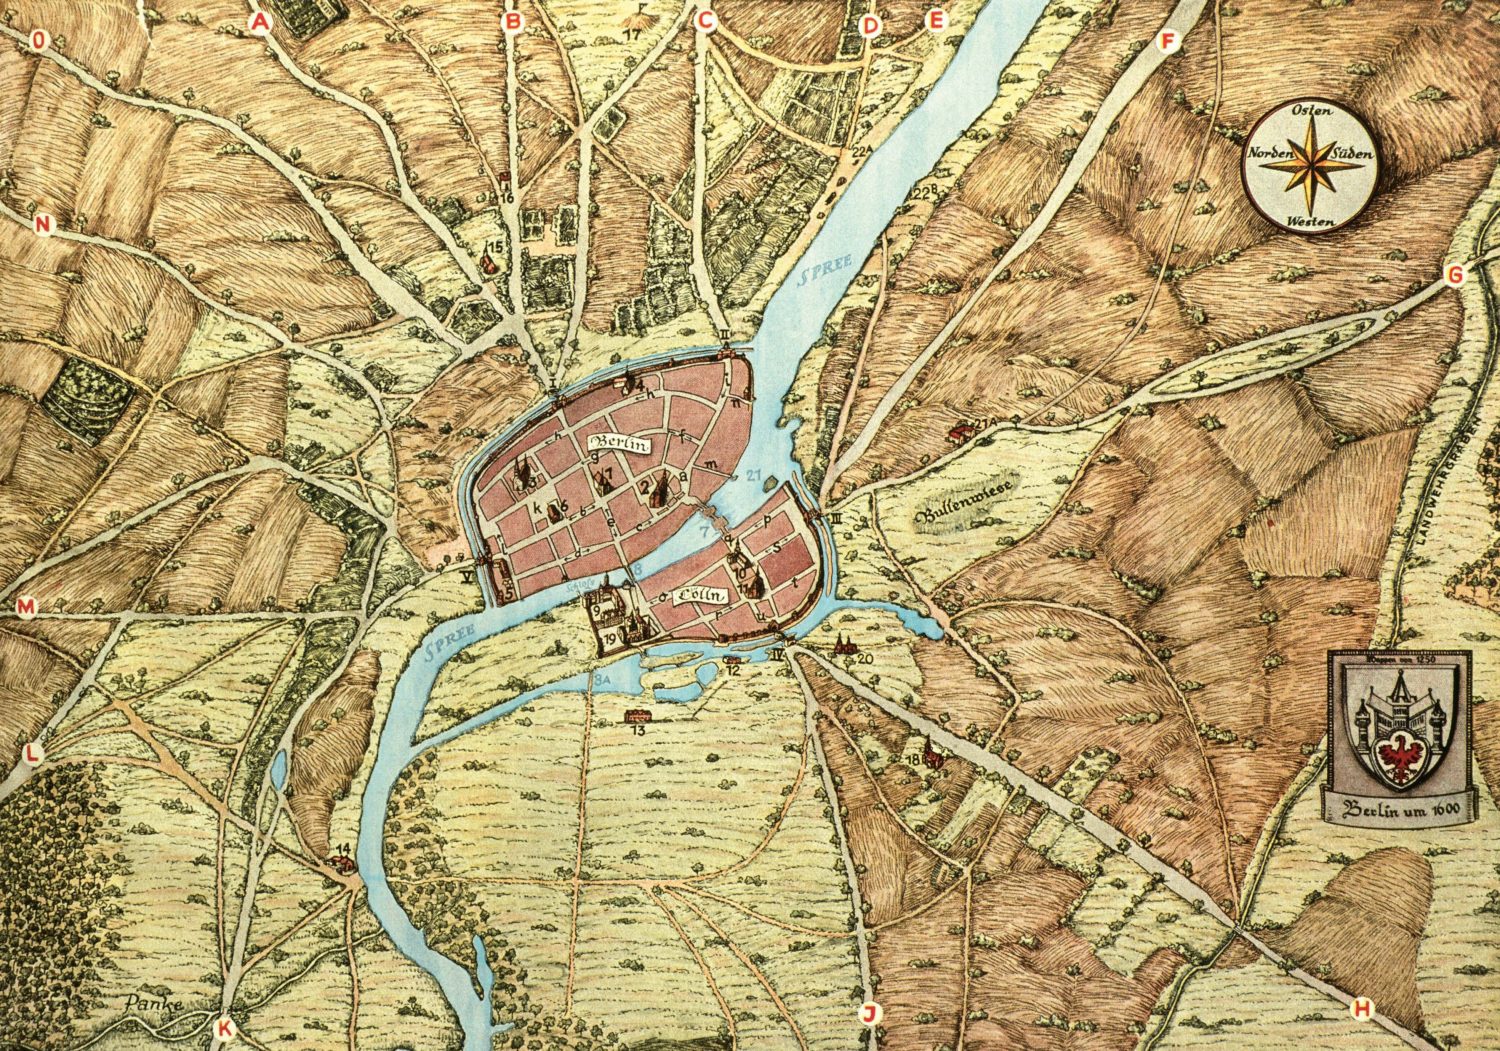 Berlin historische Karten